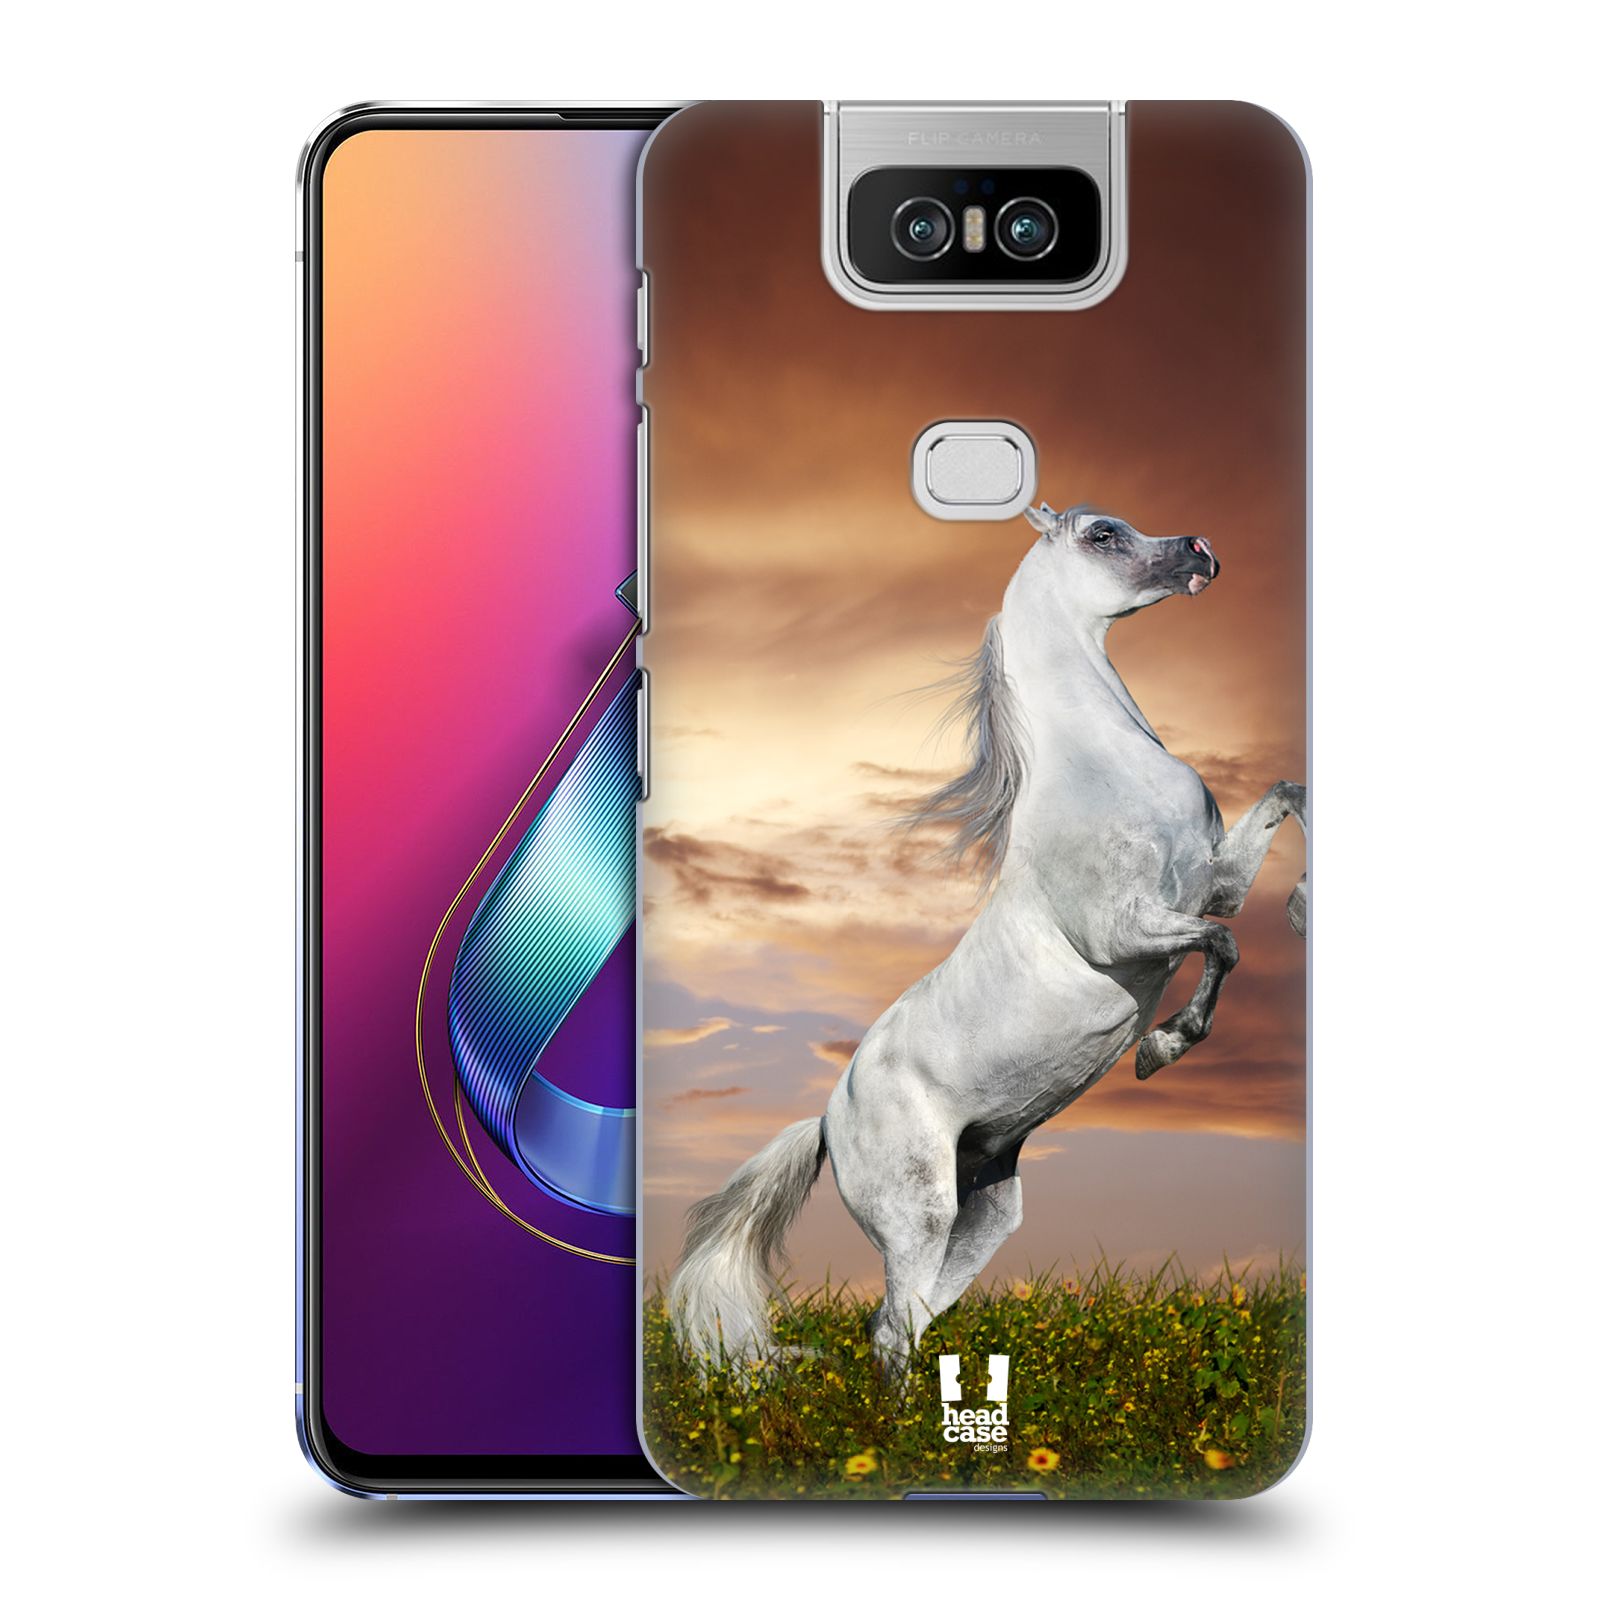 Zadní obal pro mobil Asus Zenfone 6 ZS630KL - HEAD CASE - Svět zvířat divoký kůň